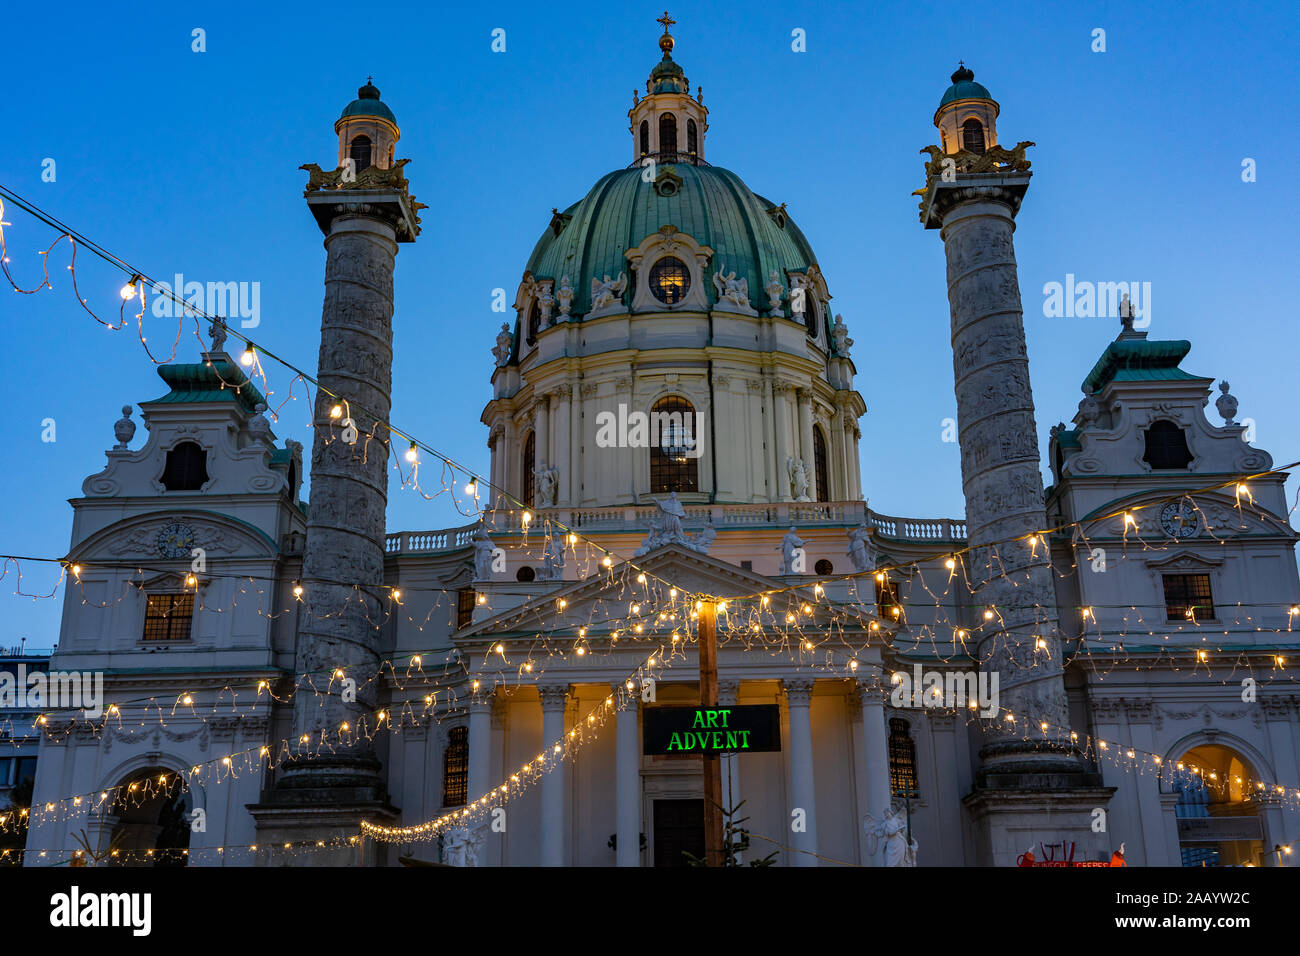 Marché de l'Avent Noël de l'art à Vienne, à l'Karsplatz avec cathédrale et la lumière garland Banque D'Images